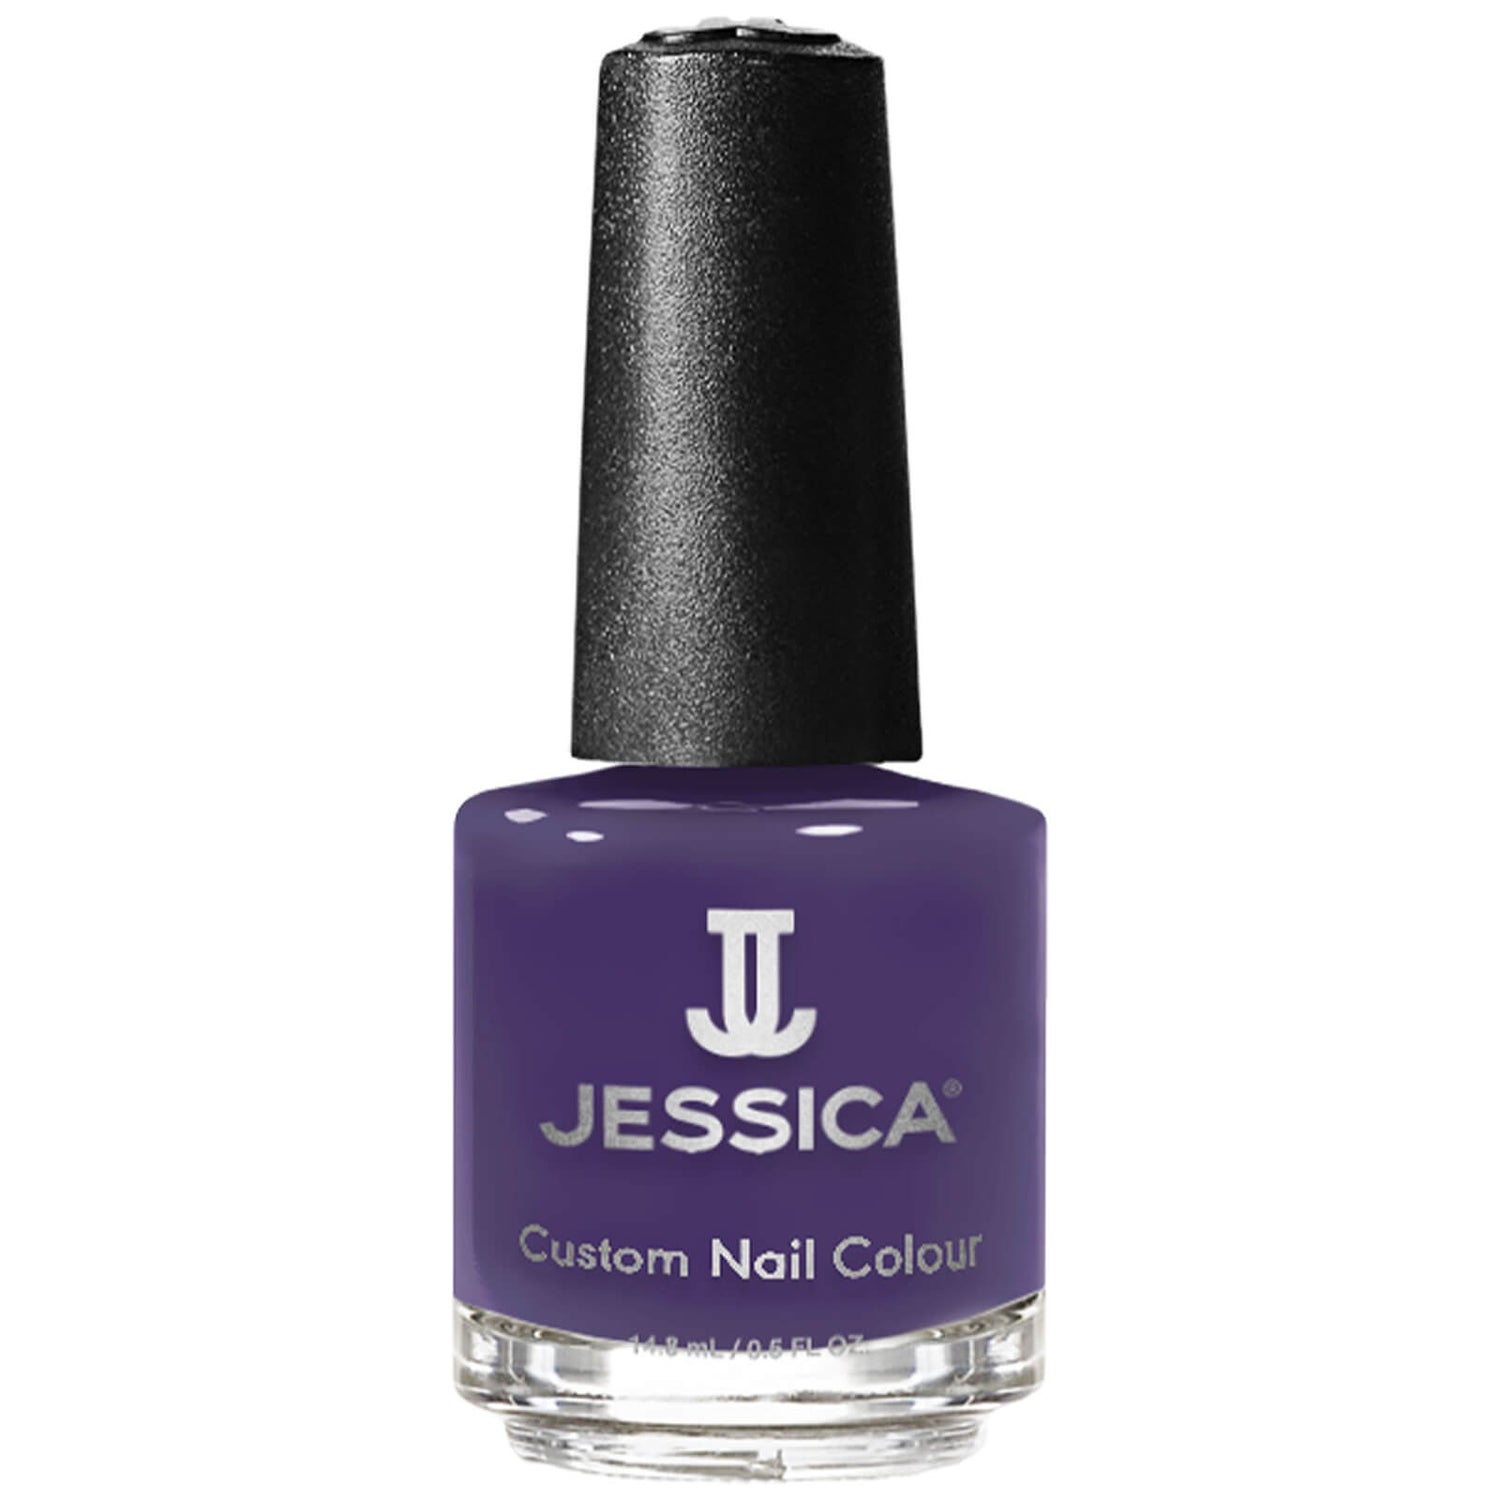 Jessica Custom Nail Colour Cabana Bay 14ml - Grape Escape